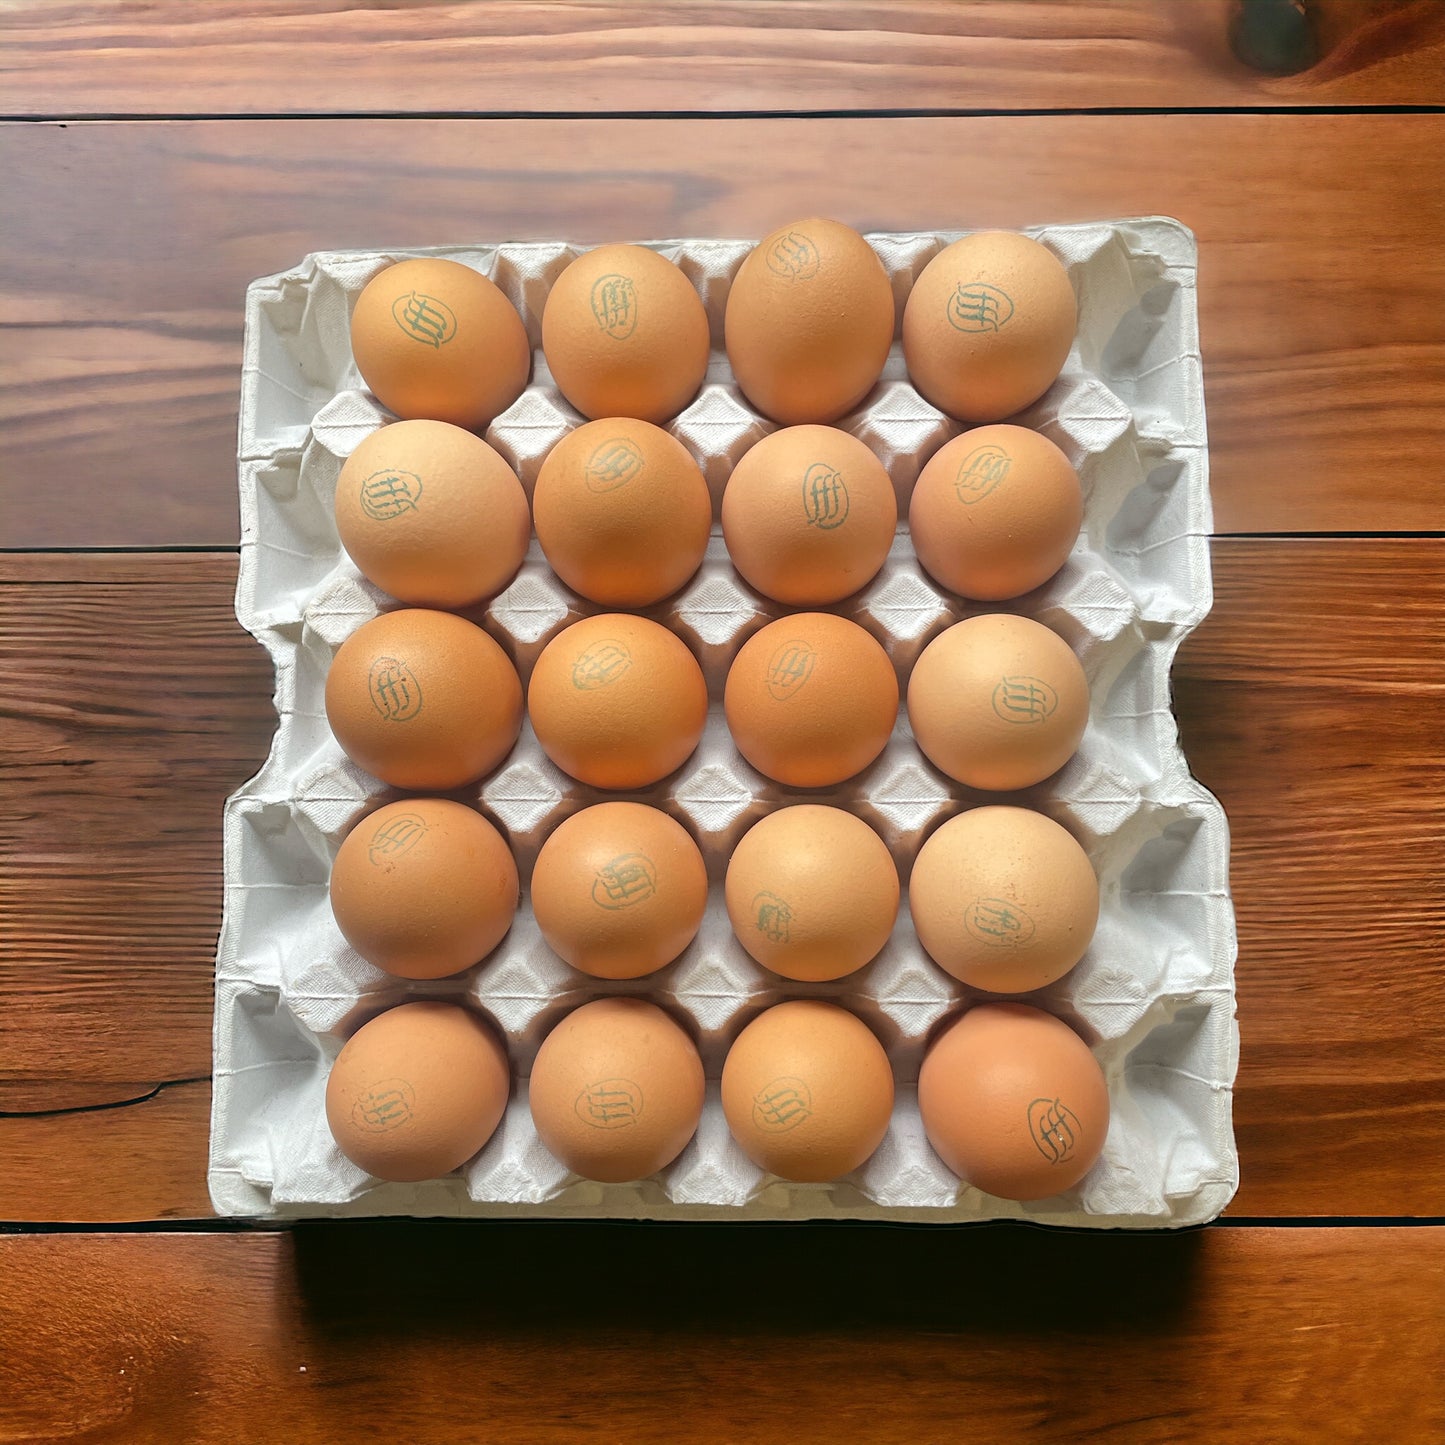 Olliff farm - 20 Premium pasture eggs.